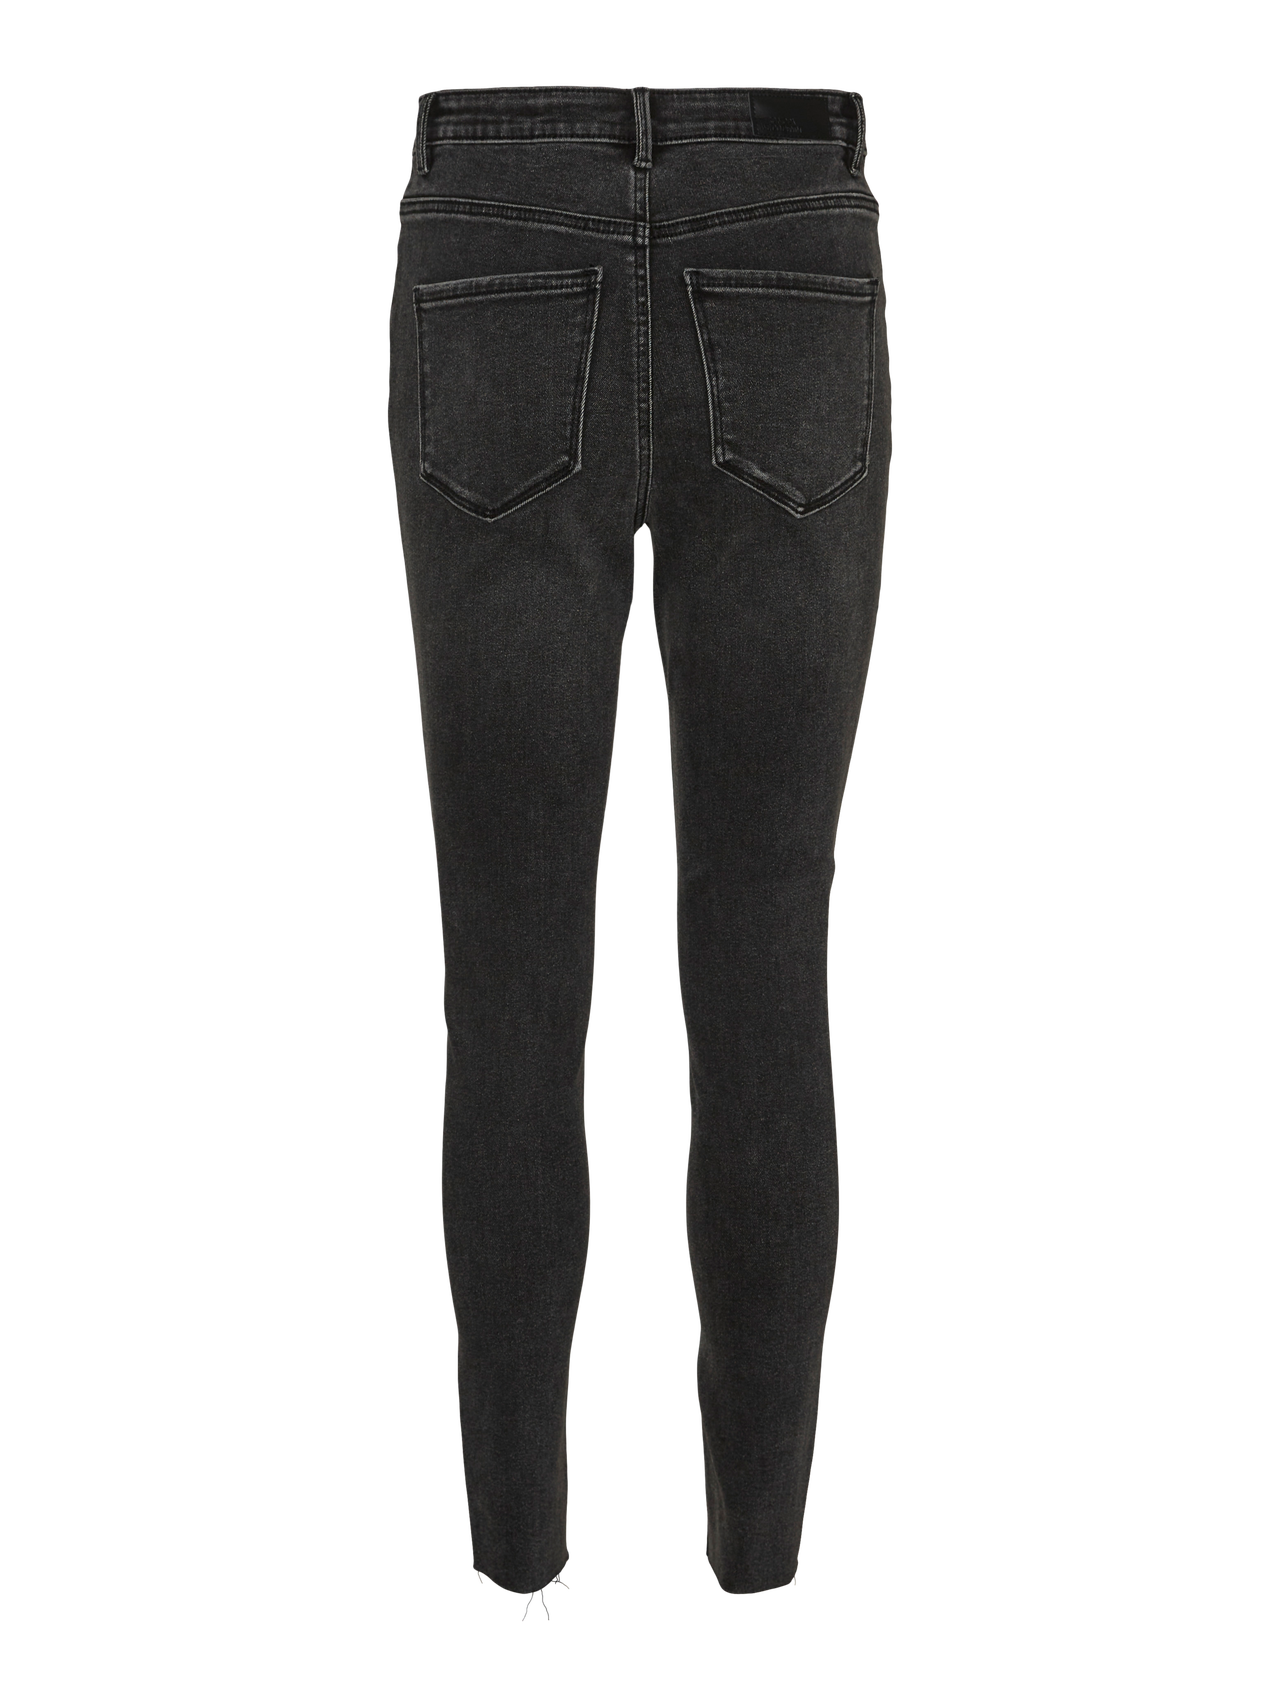 Vero Moda VMSOPHIA Slim Fit Jeans -Black Denim - 10315103